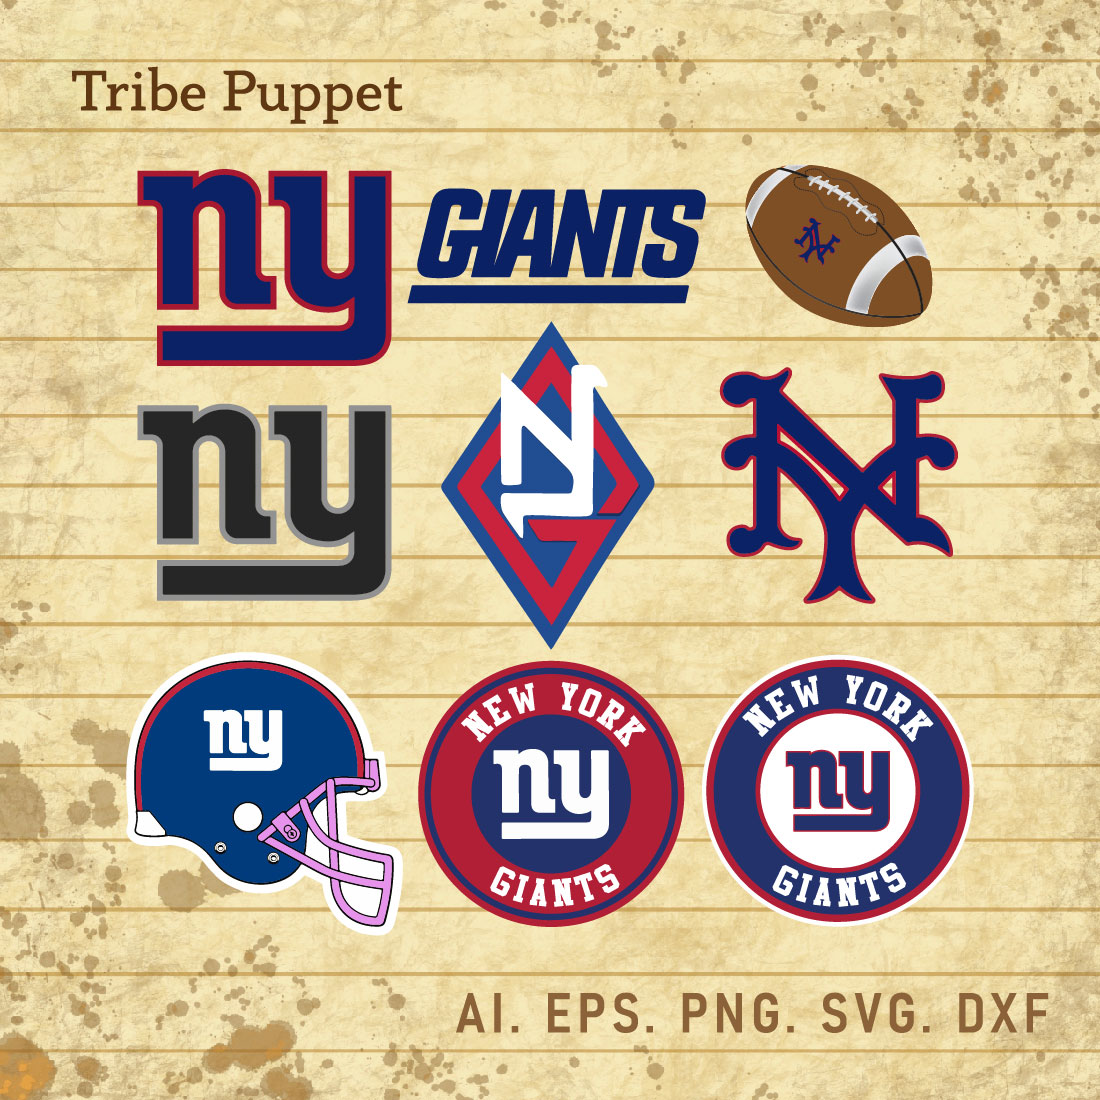 Giants Baseball SVG, Giants Baseball Cut File, Giants Baseball DXF, Giants  Baseball PNG, Giants Baseball Clipart